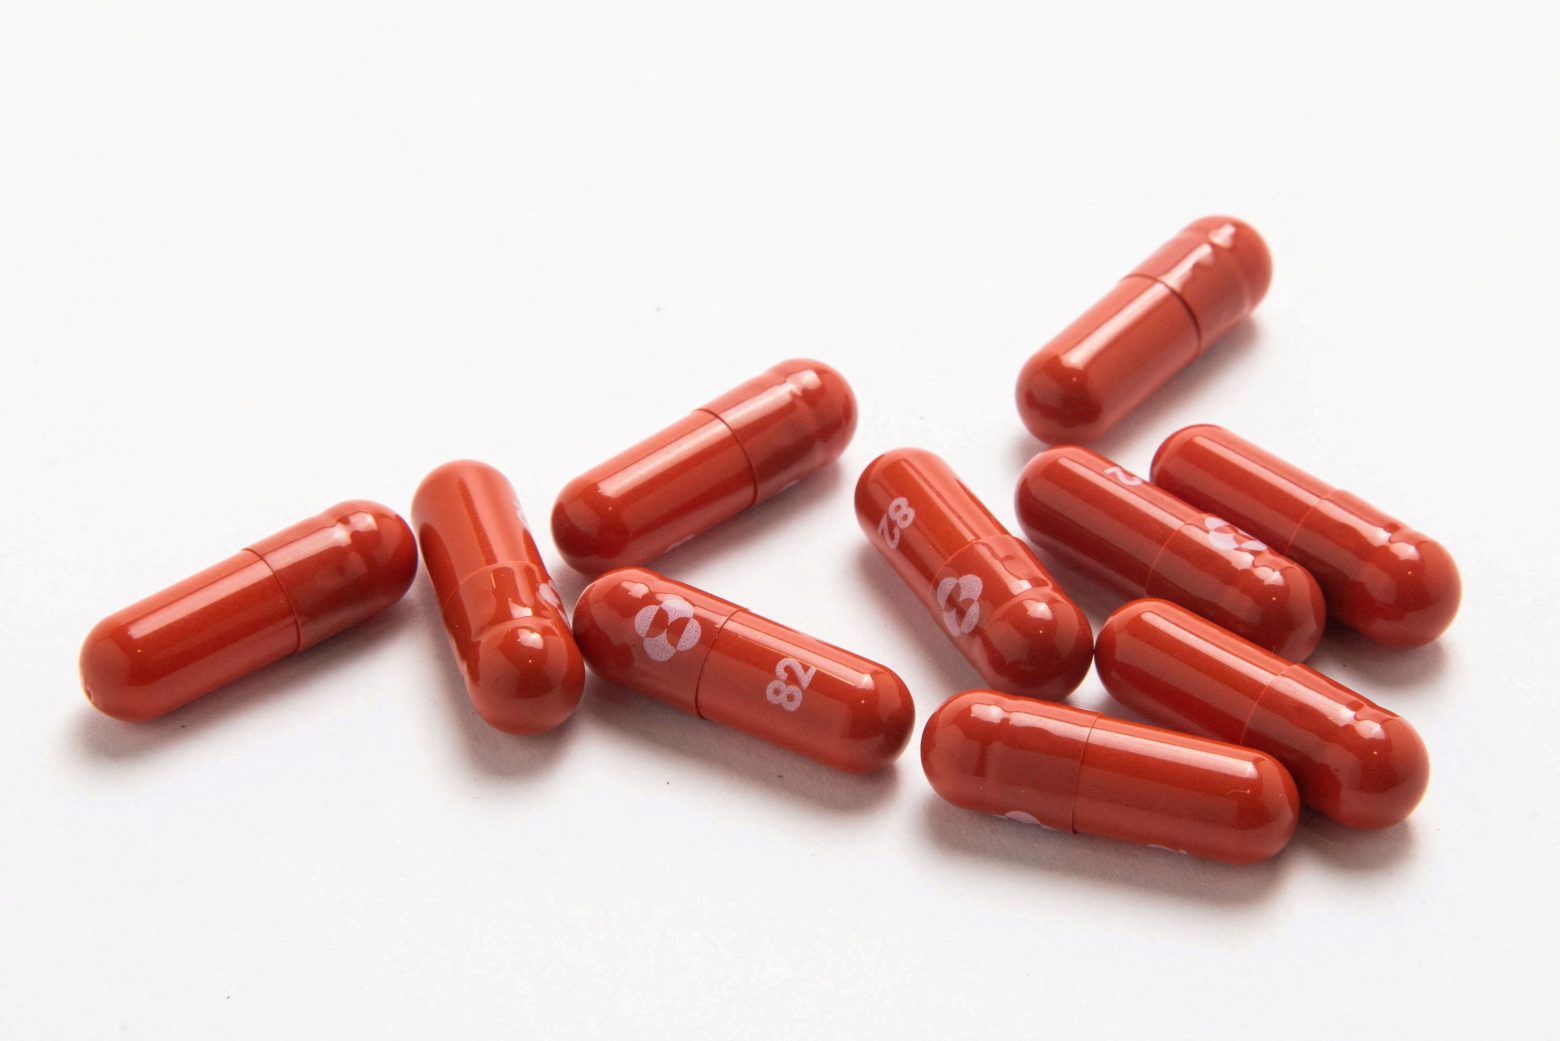 Κοροναϊός - Εγκρίθηκε στις ΗΠΑ το αντιικό χάπι της Merck που λαμβάνεται στο σπίτι